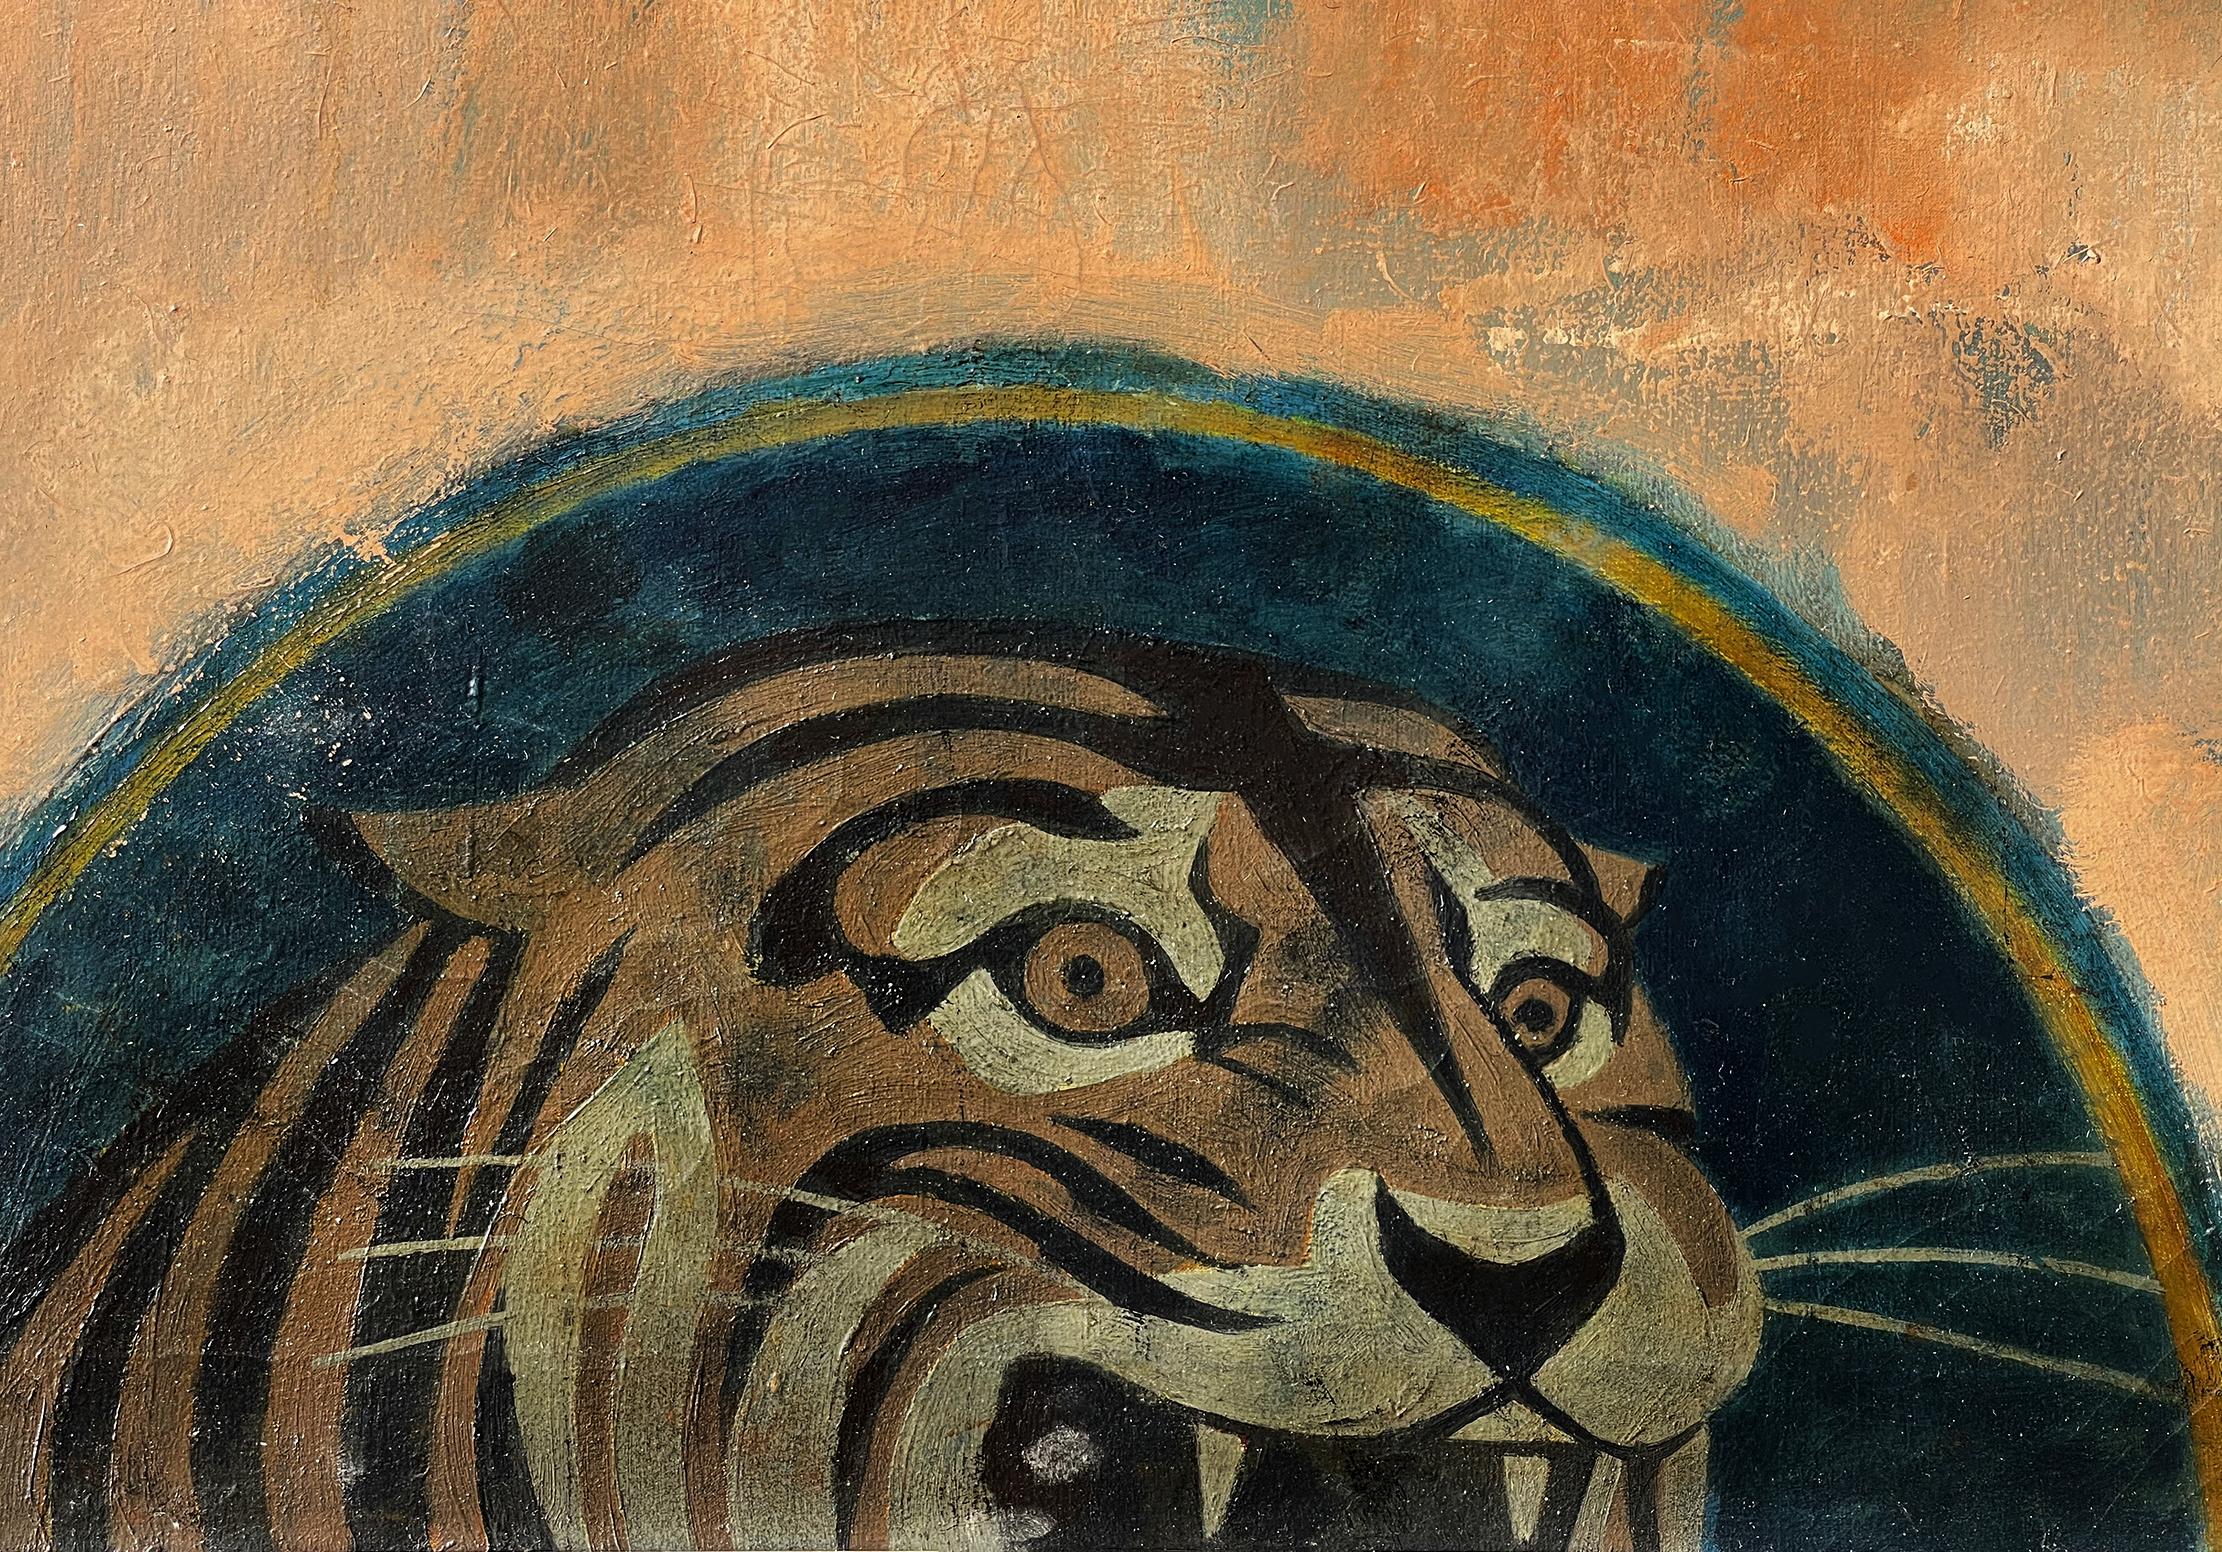 Collier bleu « Gritty Truck Driver with Tiger » (driver de camion avec un tigre - champ de couleurs rencontre le réalisme social)  - Colorfield Painting par Joseph Hirsch